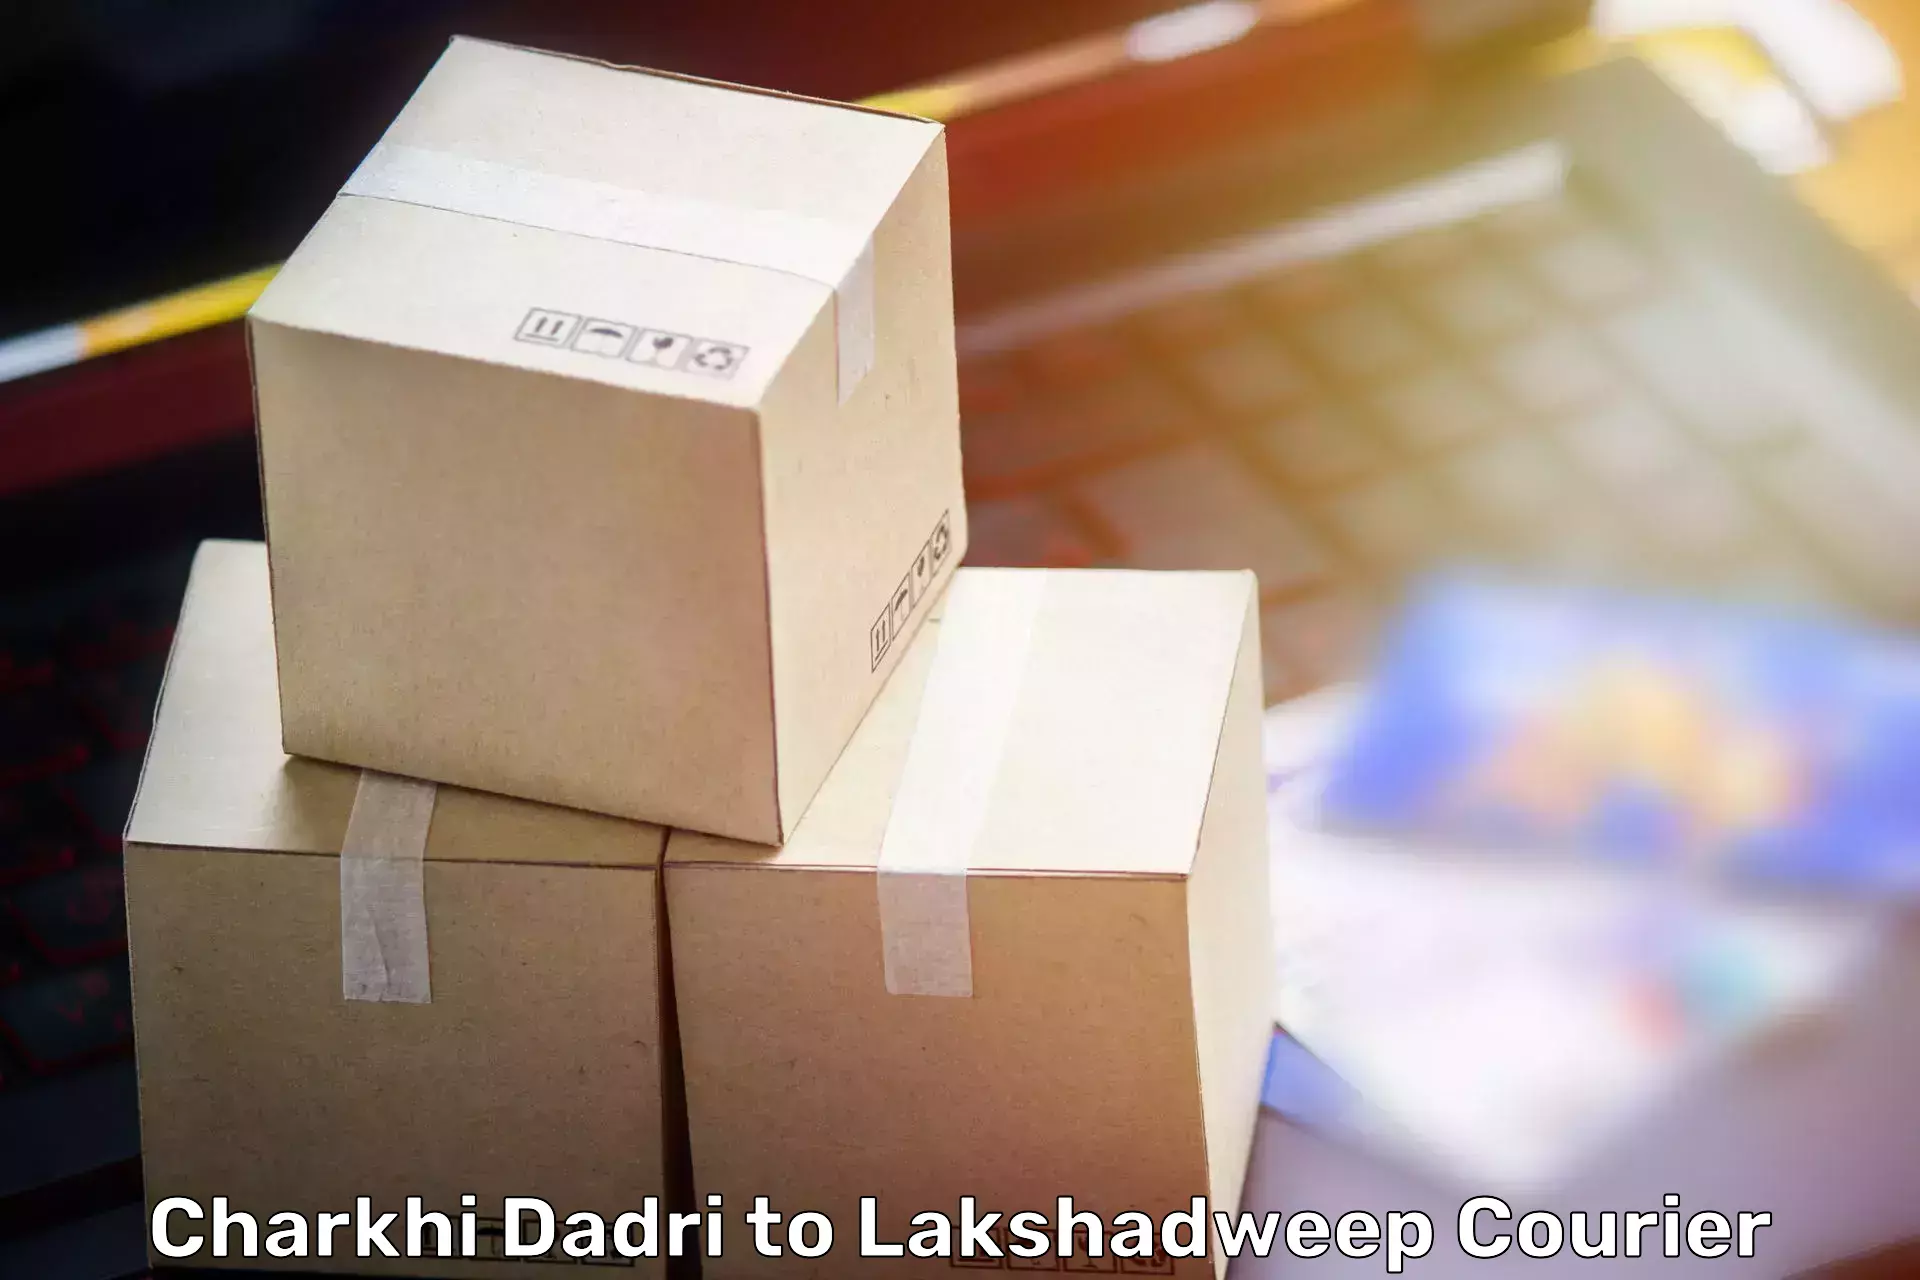 Furniture moving experts Charkhi Dadri to Lakshadweep